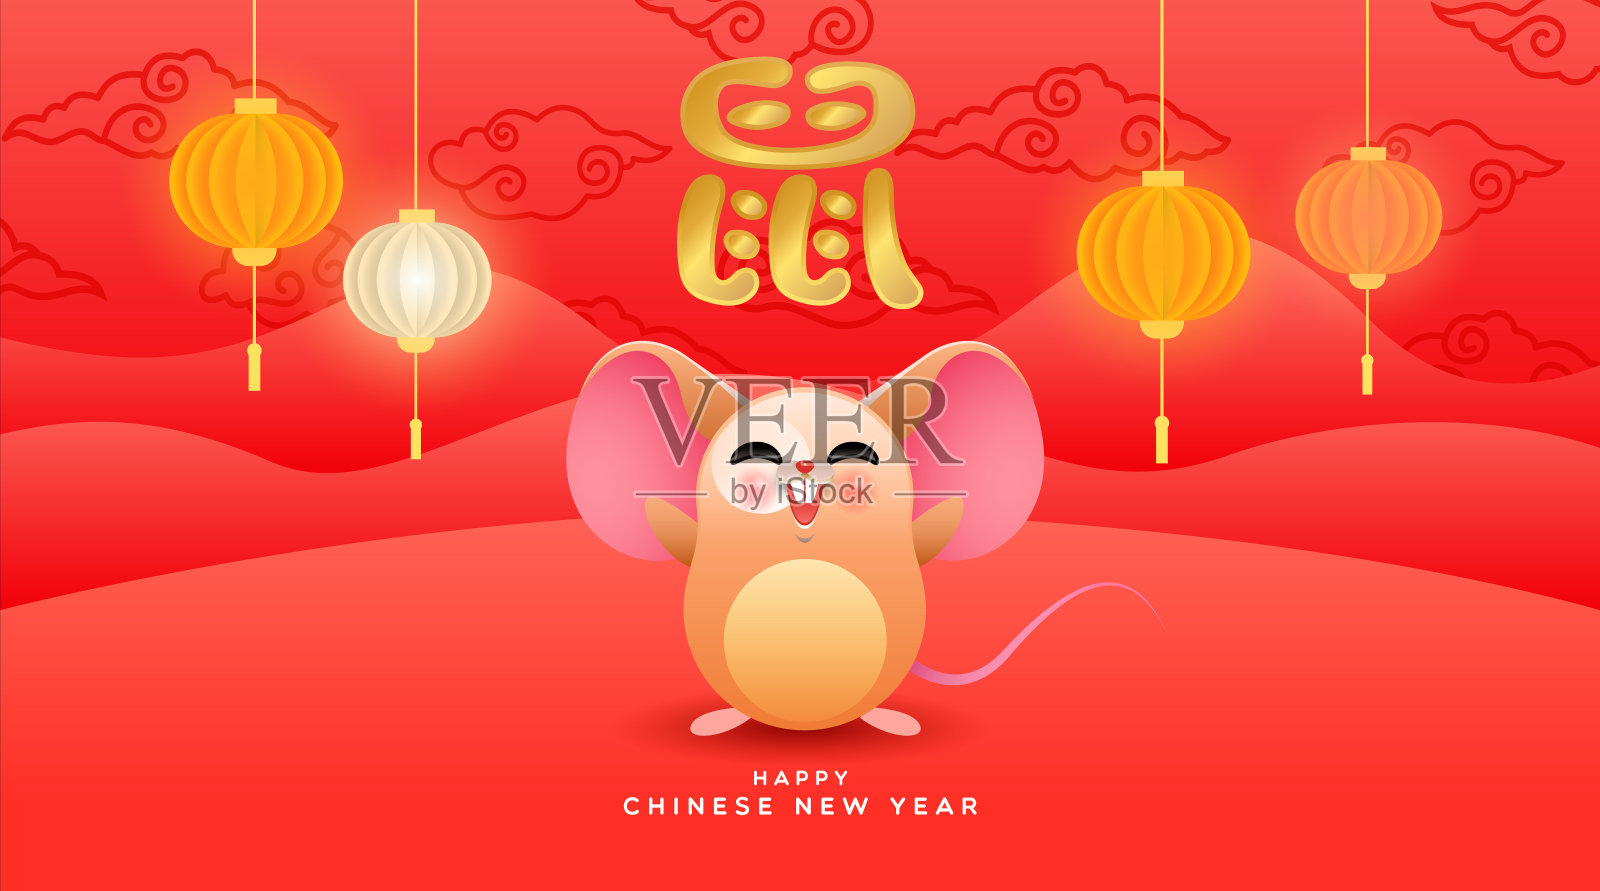 中国2020年卡通可爱老鼠贺卡设计模板素材